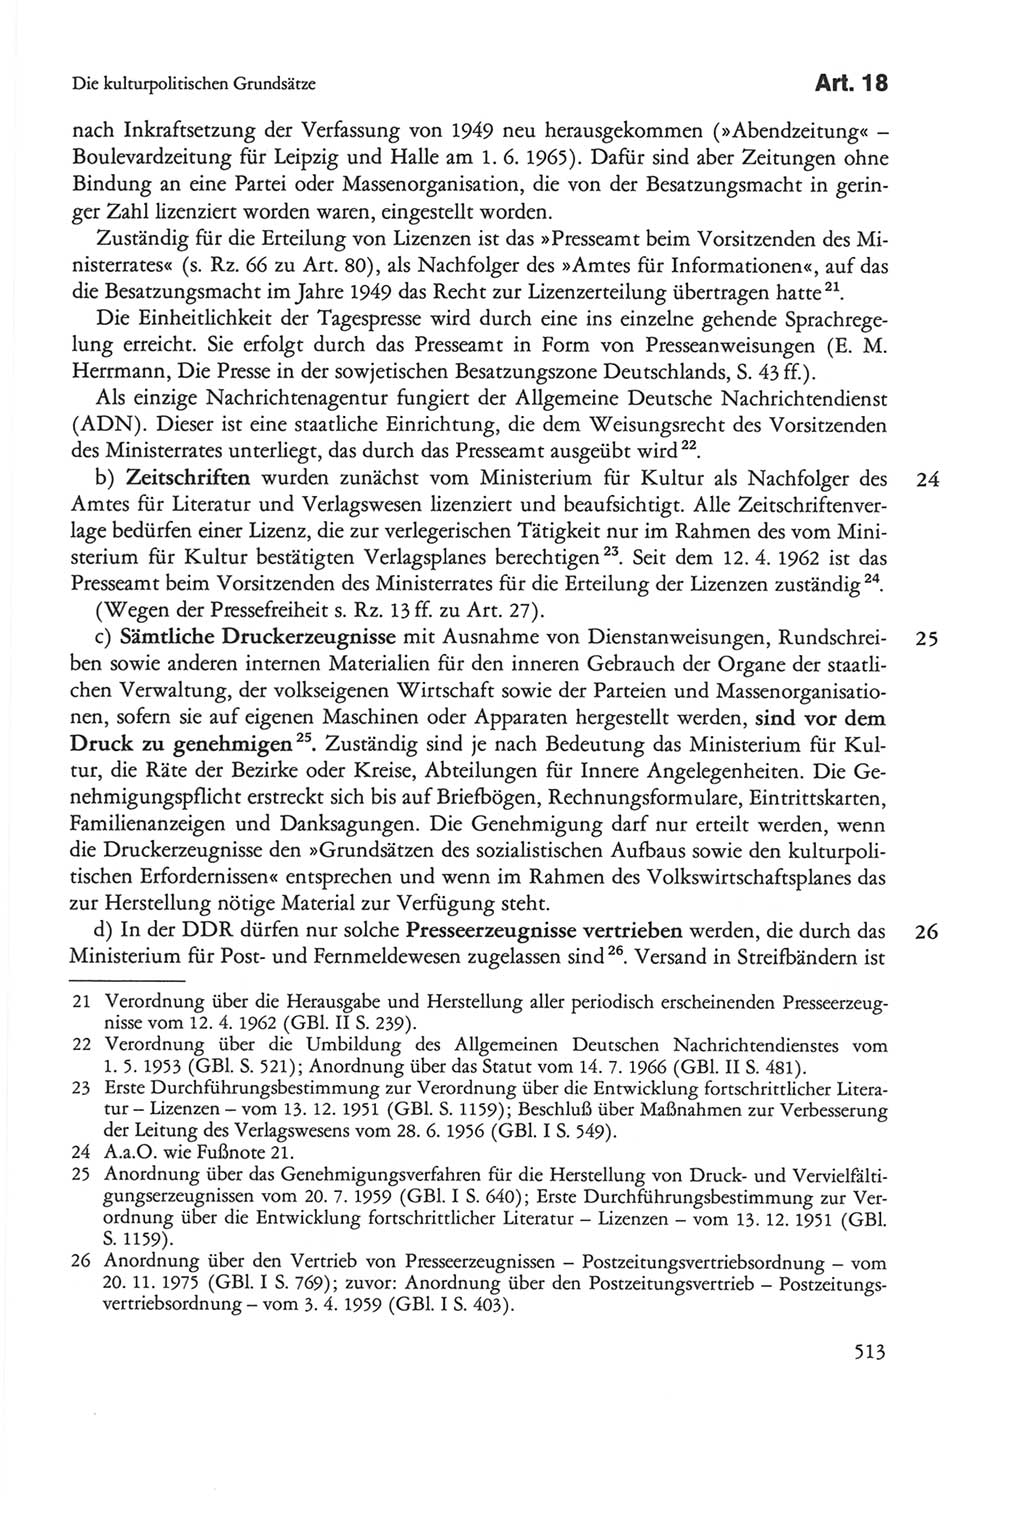 Die sozialistische Verfassung der Deutschen Demokratischen Republik (DDR), Kommentar 1982, Seite 513 (Soz. Verf. DDR Komm. 1982, S. 513)